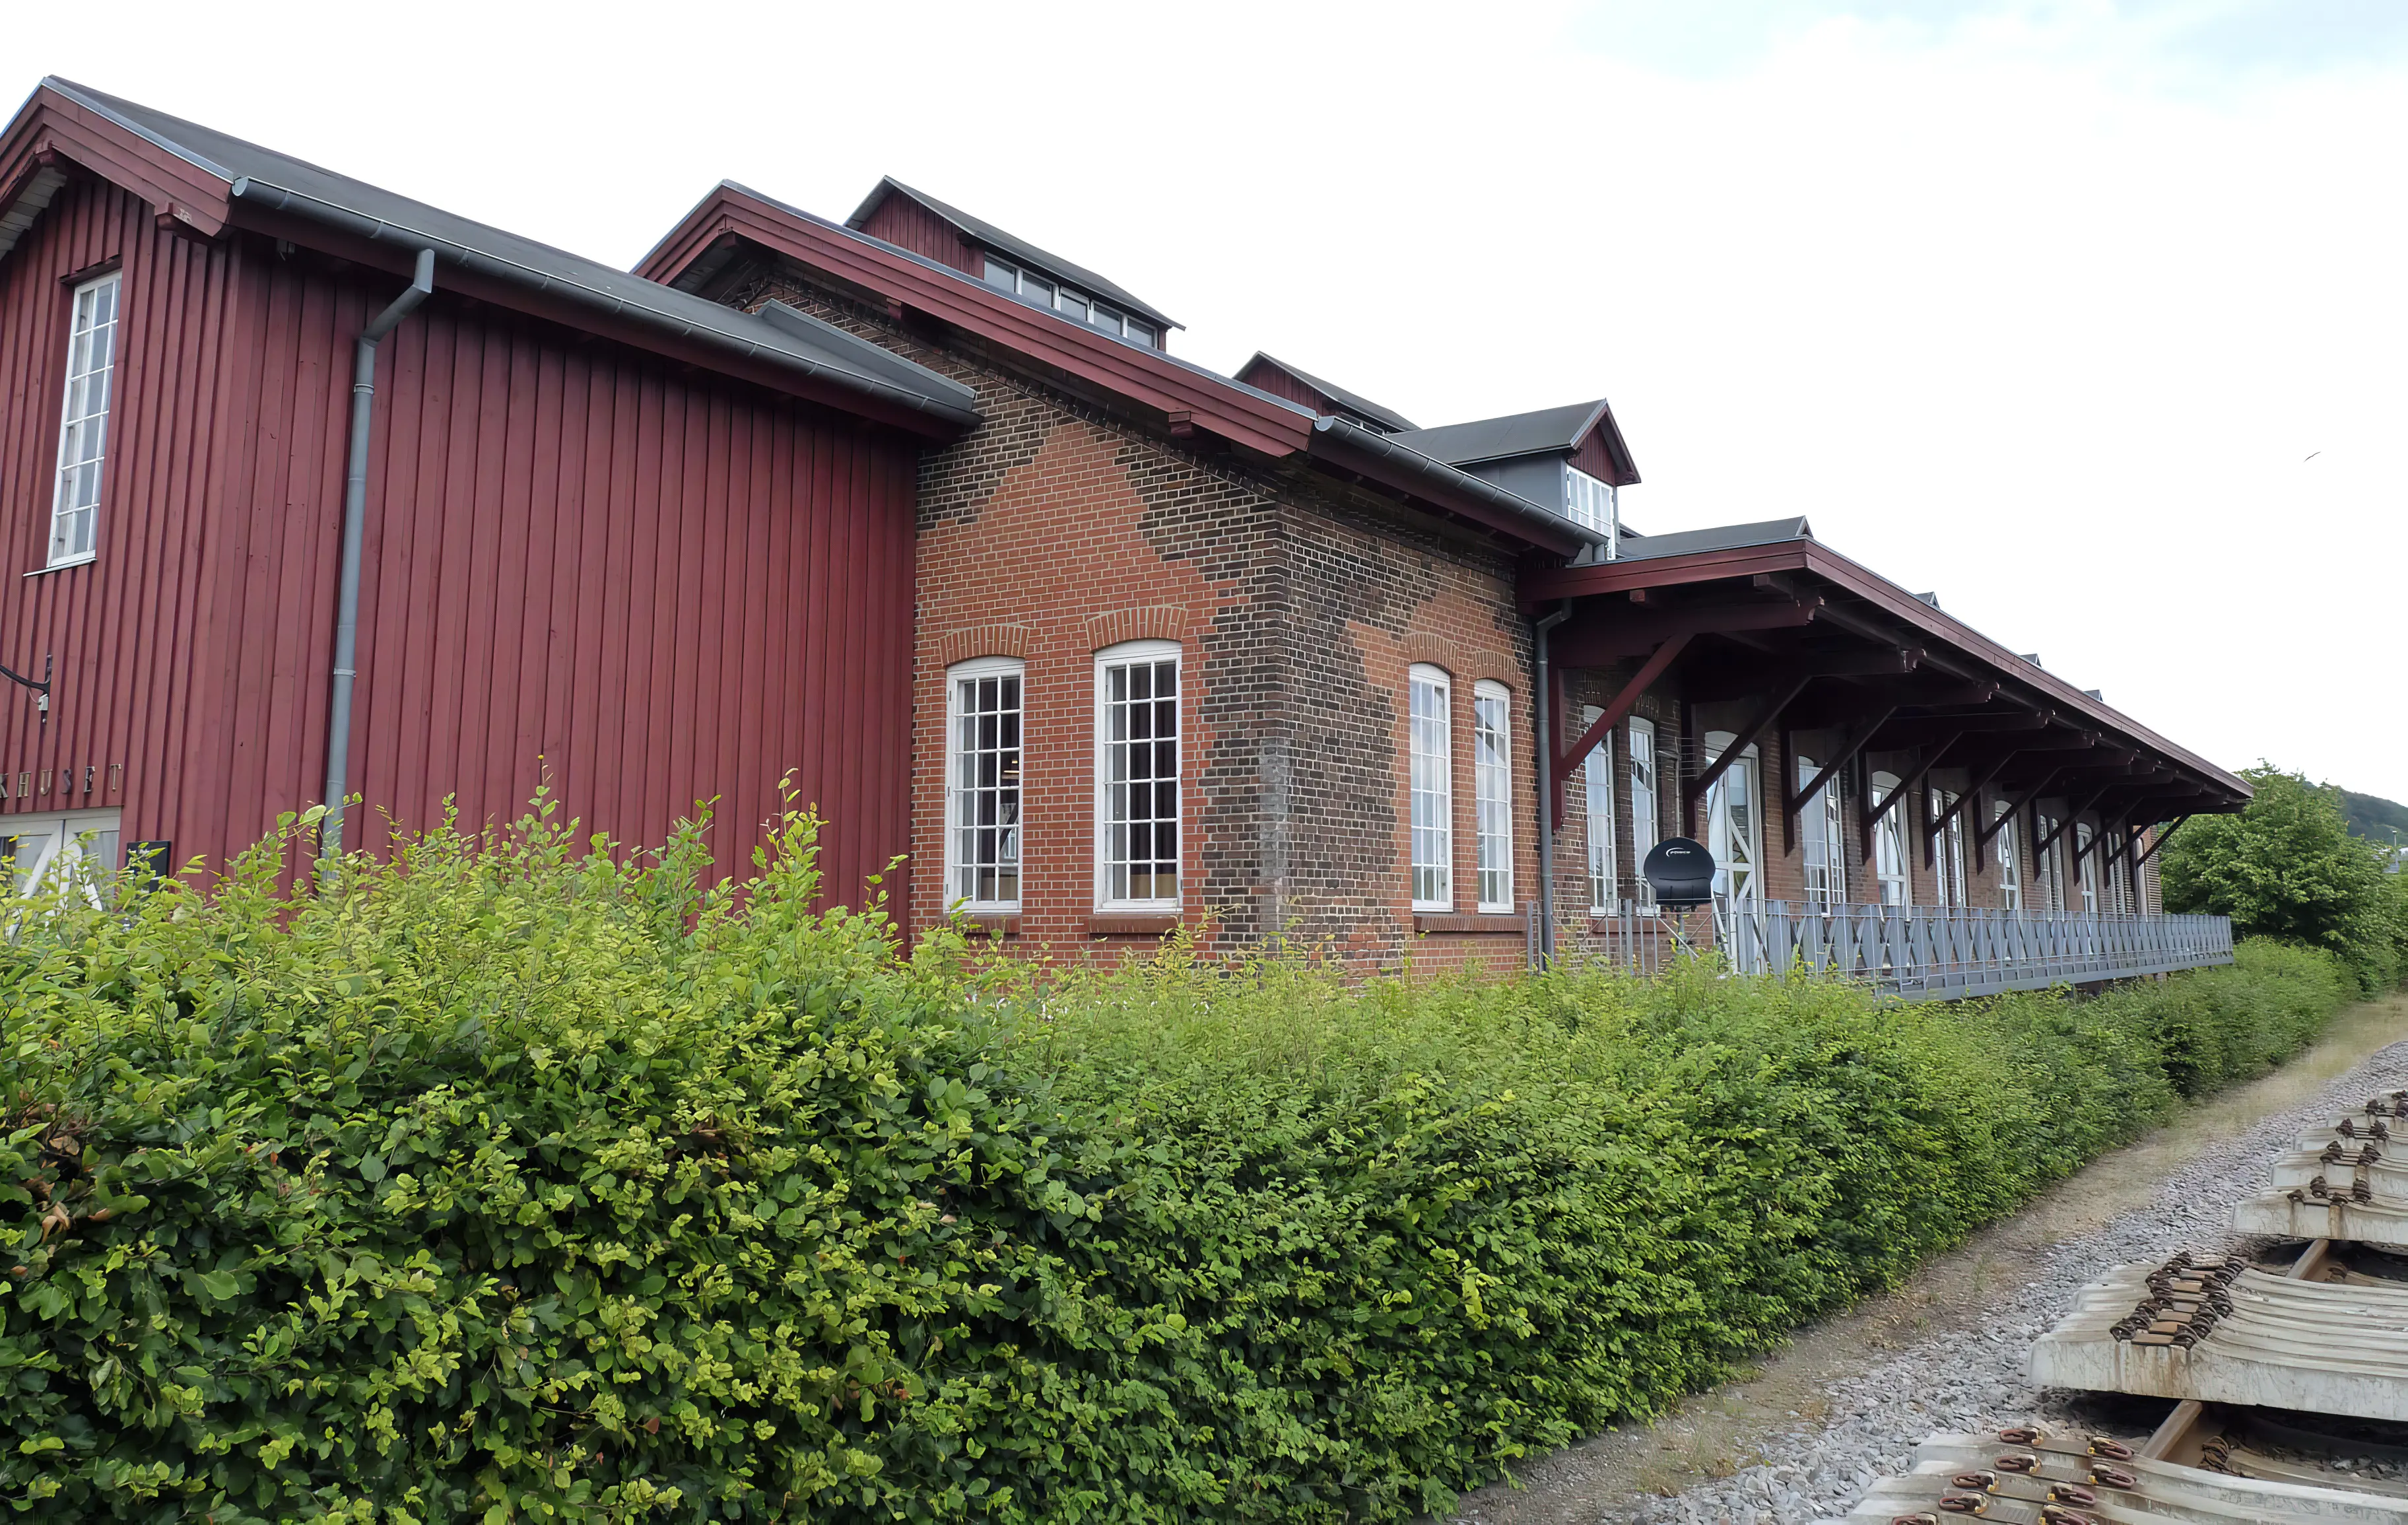 Billede af Østbanetorvet Station - tidligere Århus Øst Station. Her er det gamle pakhus fotograferet fra sporsiden.